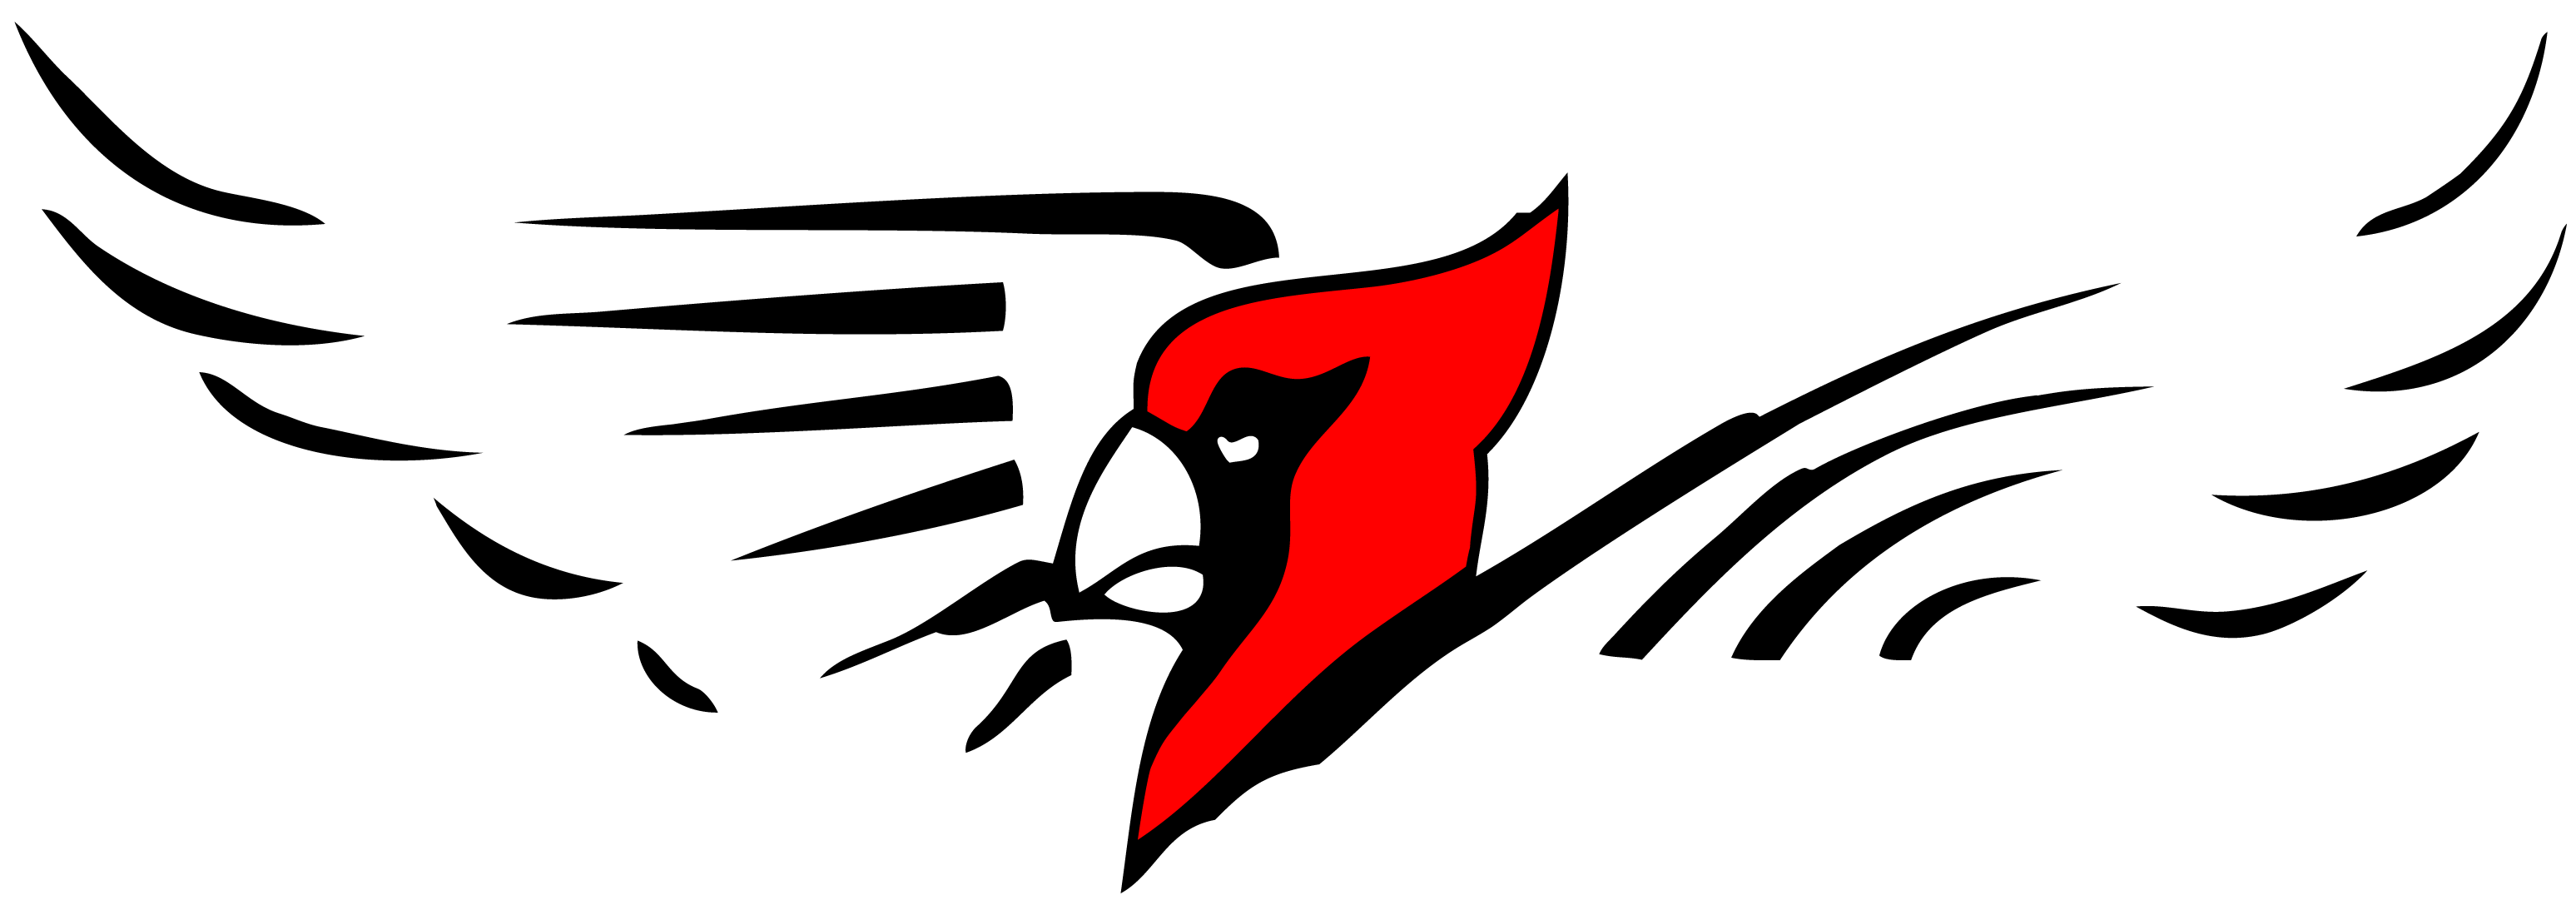 Cardinal Image - Bangor High School Cardinals (3291x1187)